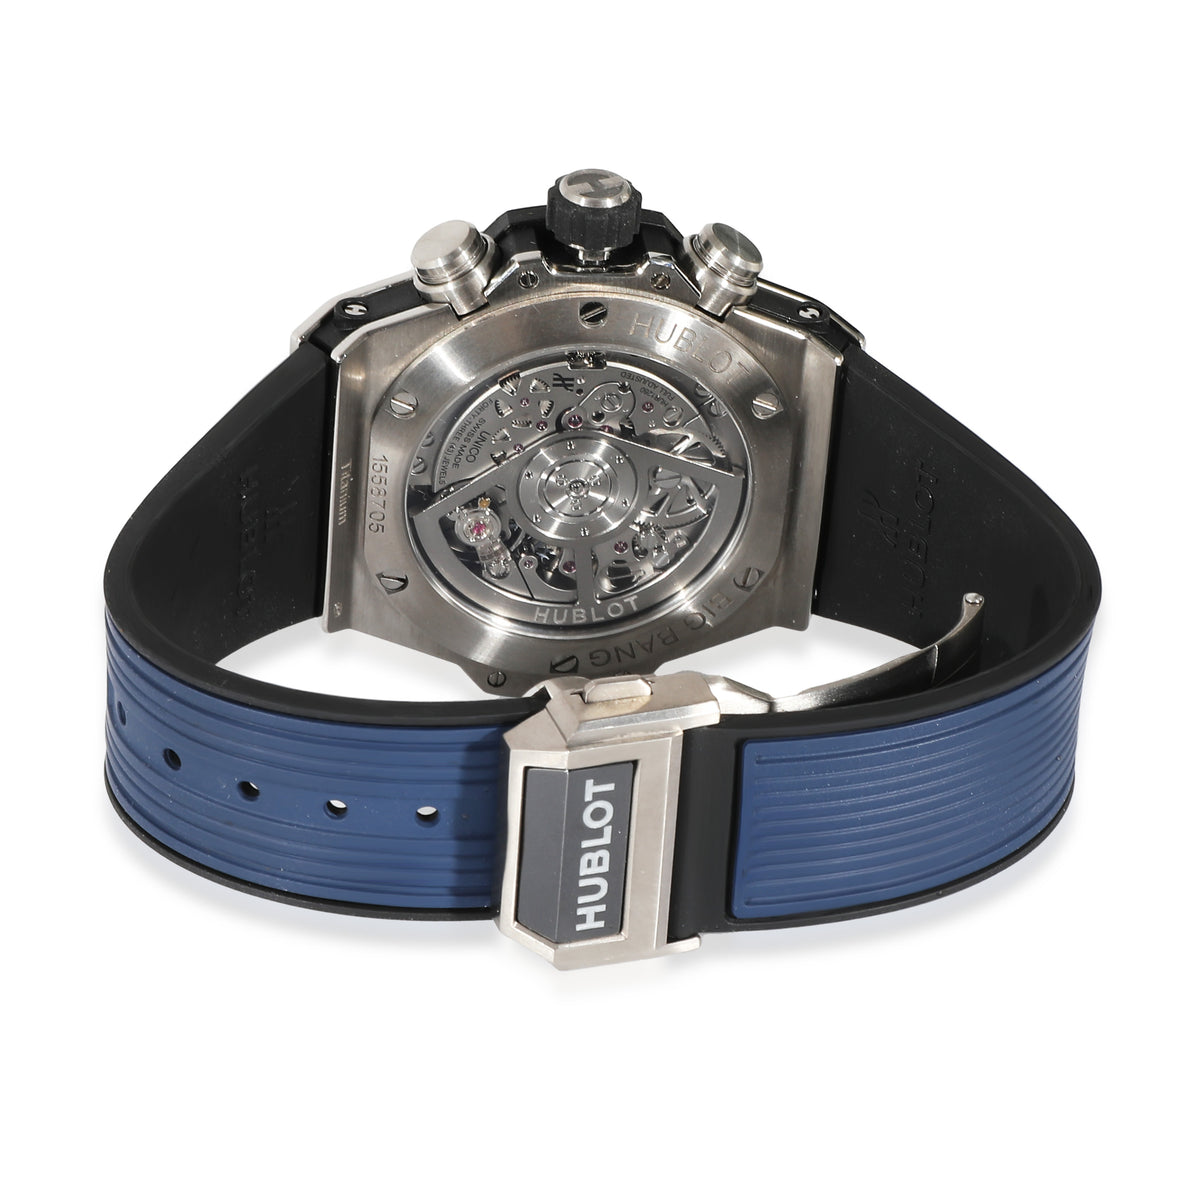 Big Bang Unico 441.NM.1171.RX Men's Watch in  Ceramic/Titanium